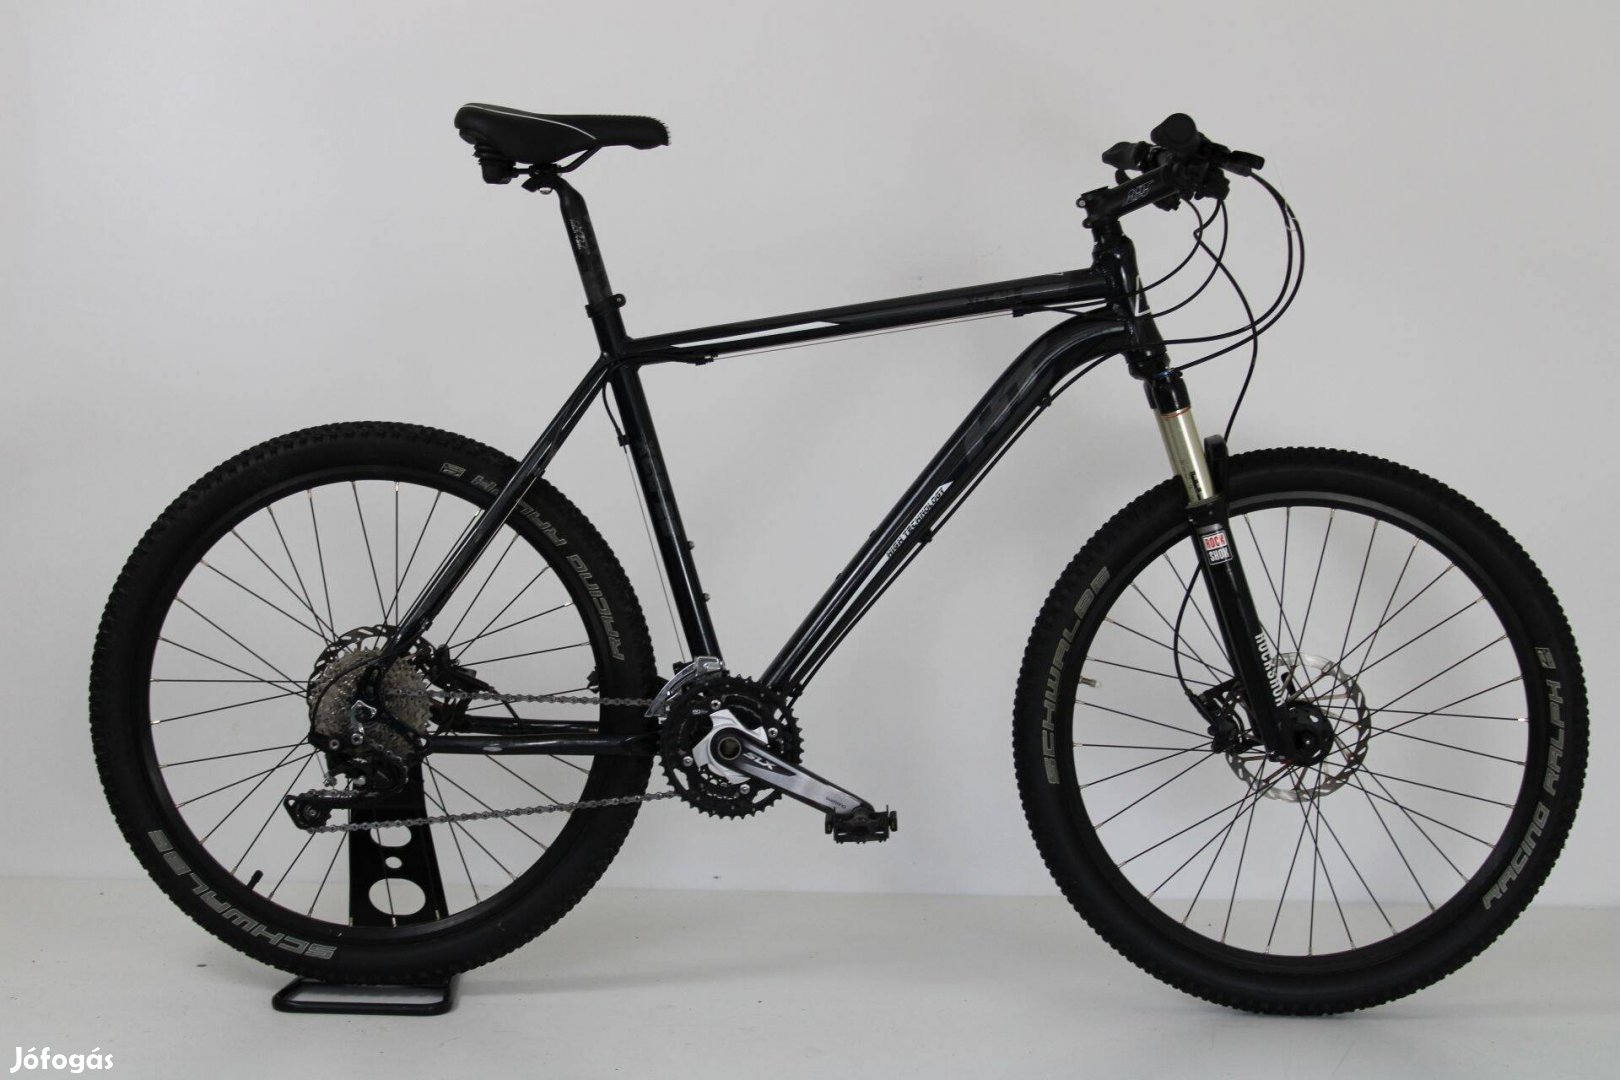 HT Xcc 4.5 26" MTB kerékpár Üzletből, Garanciával 274 990 Ft